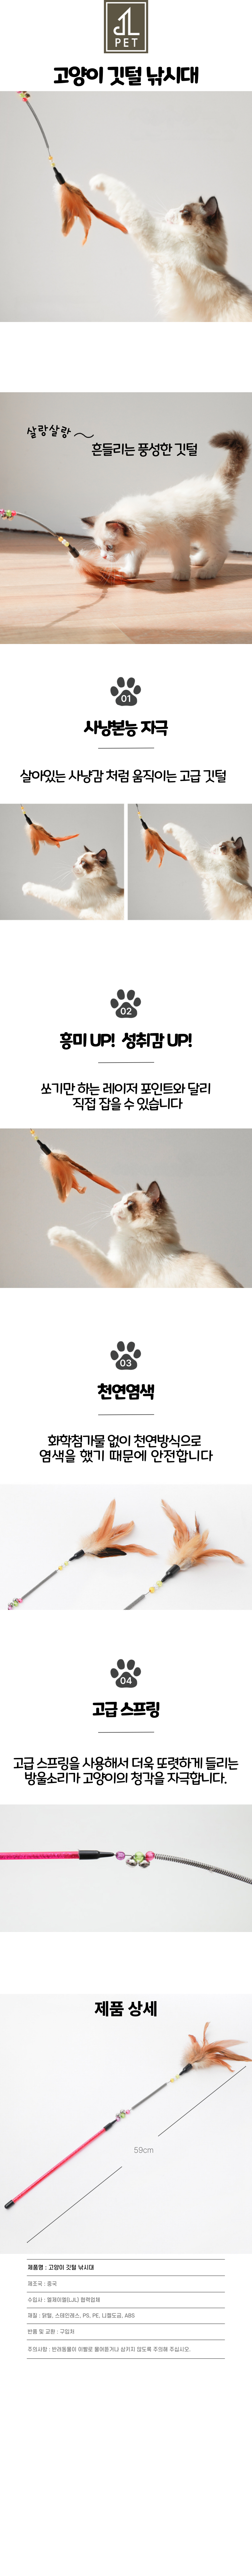 고양이-깃털-낚시대-최종.png